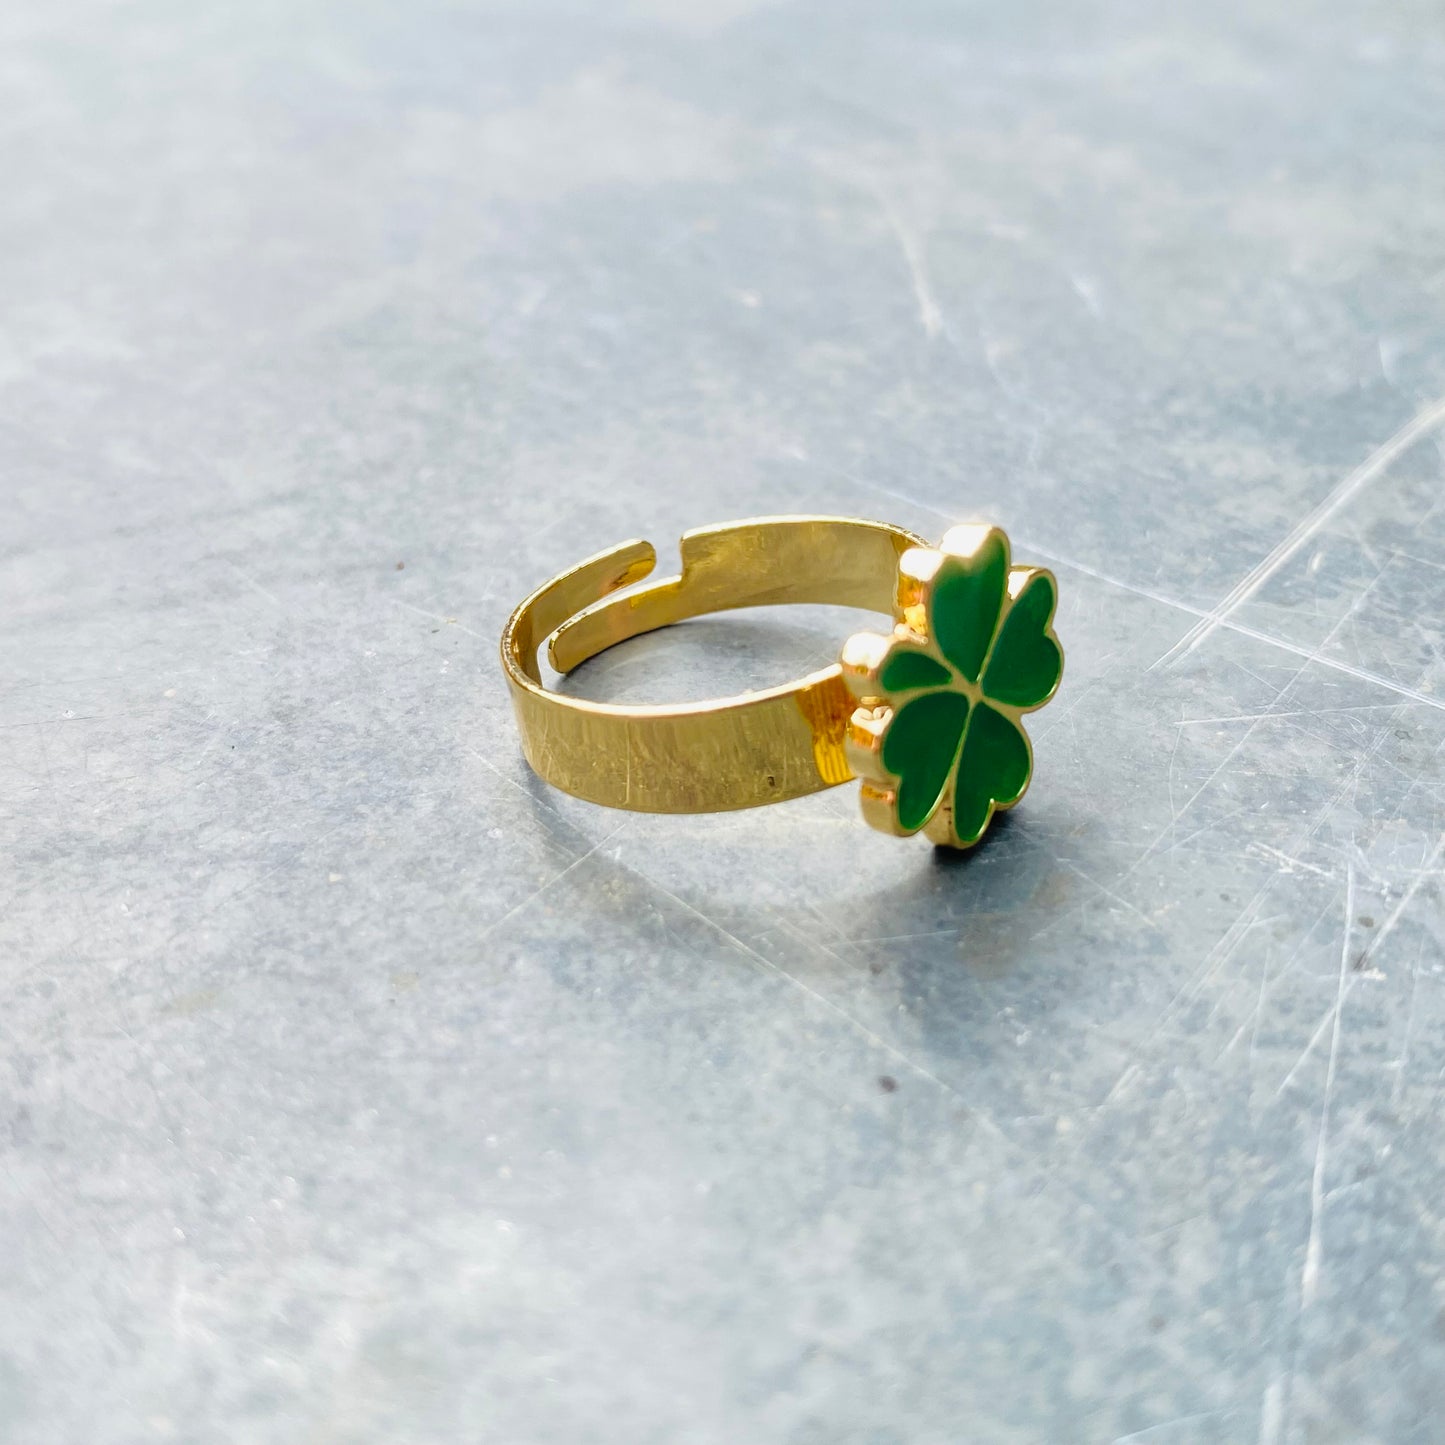 Adjustable Four Leaf Clover Ring Gold